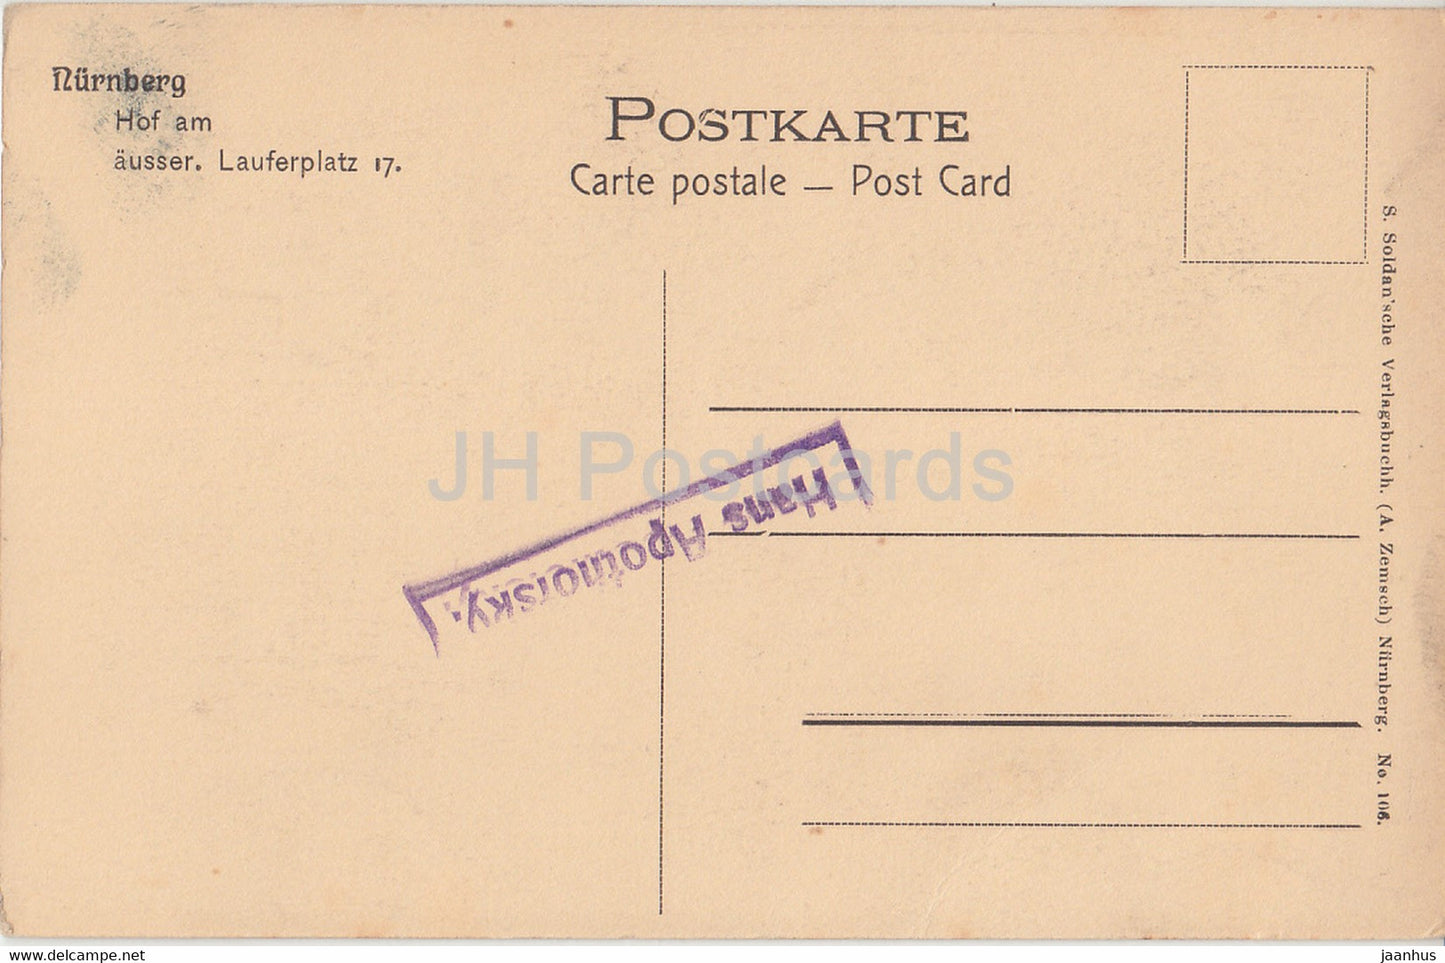 Nurnberg - Hof am ausser Lauferplatz 17 - old postcard - Germany - unused